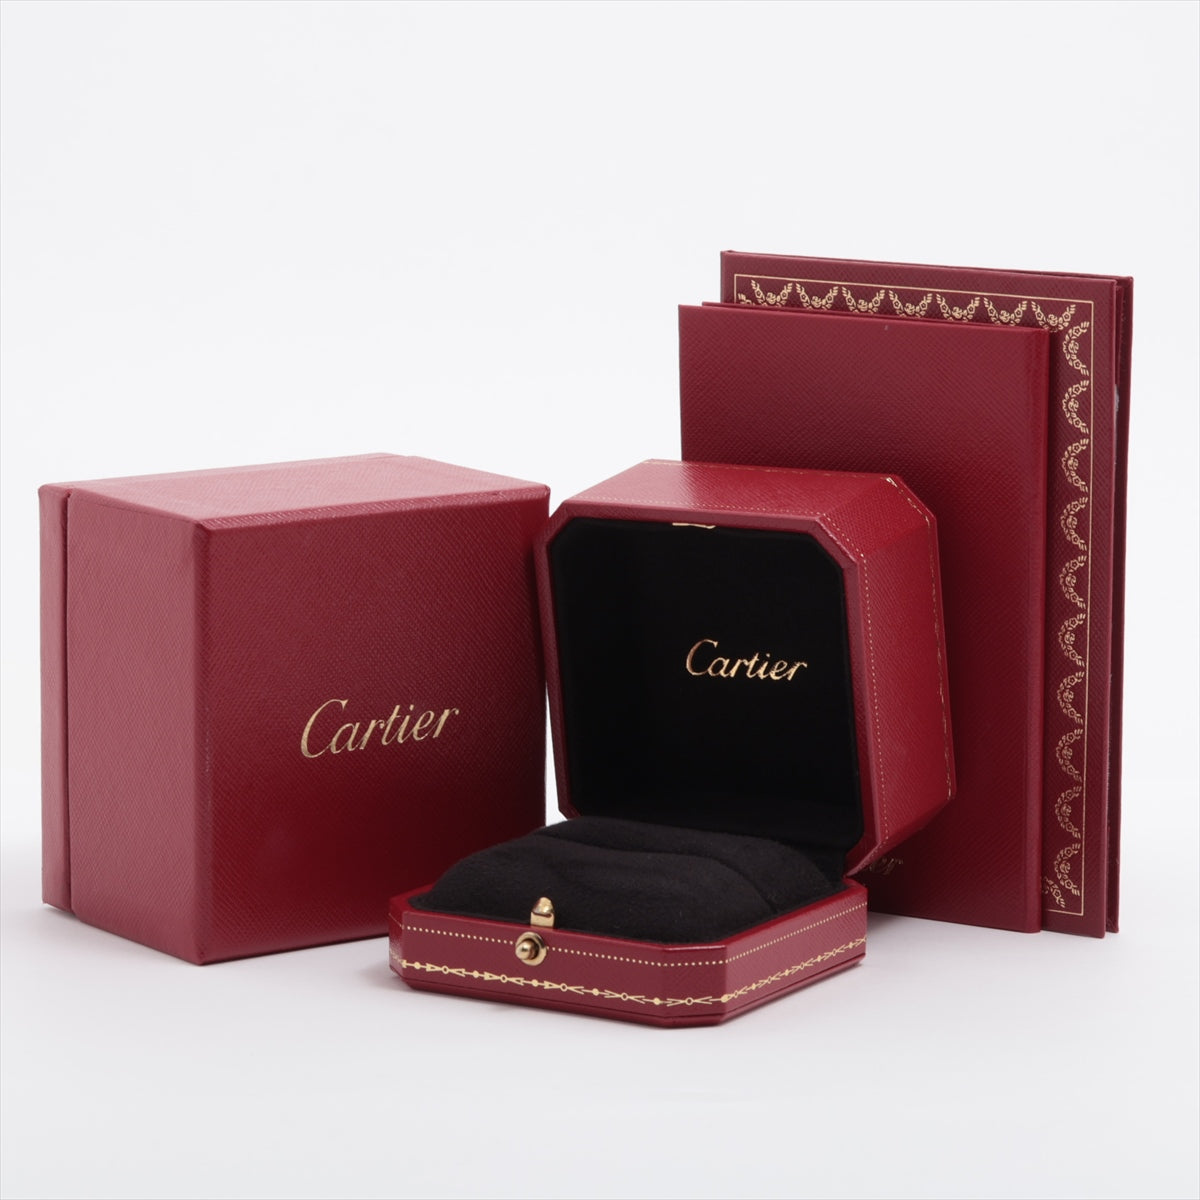 Cartier Solitaire 1895 Diamond Ring Pt950 3.0g 0.47 E VVS2 VG NONE 51 GIA 2004 N4137349